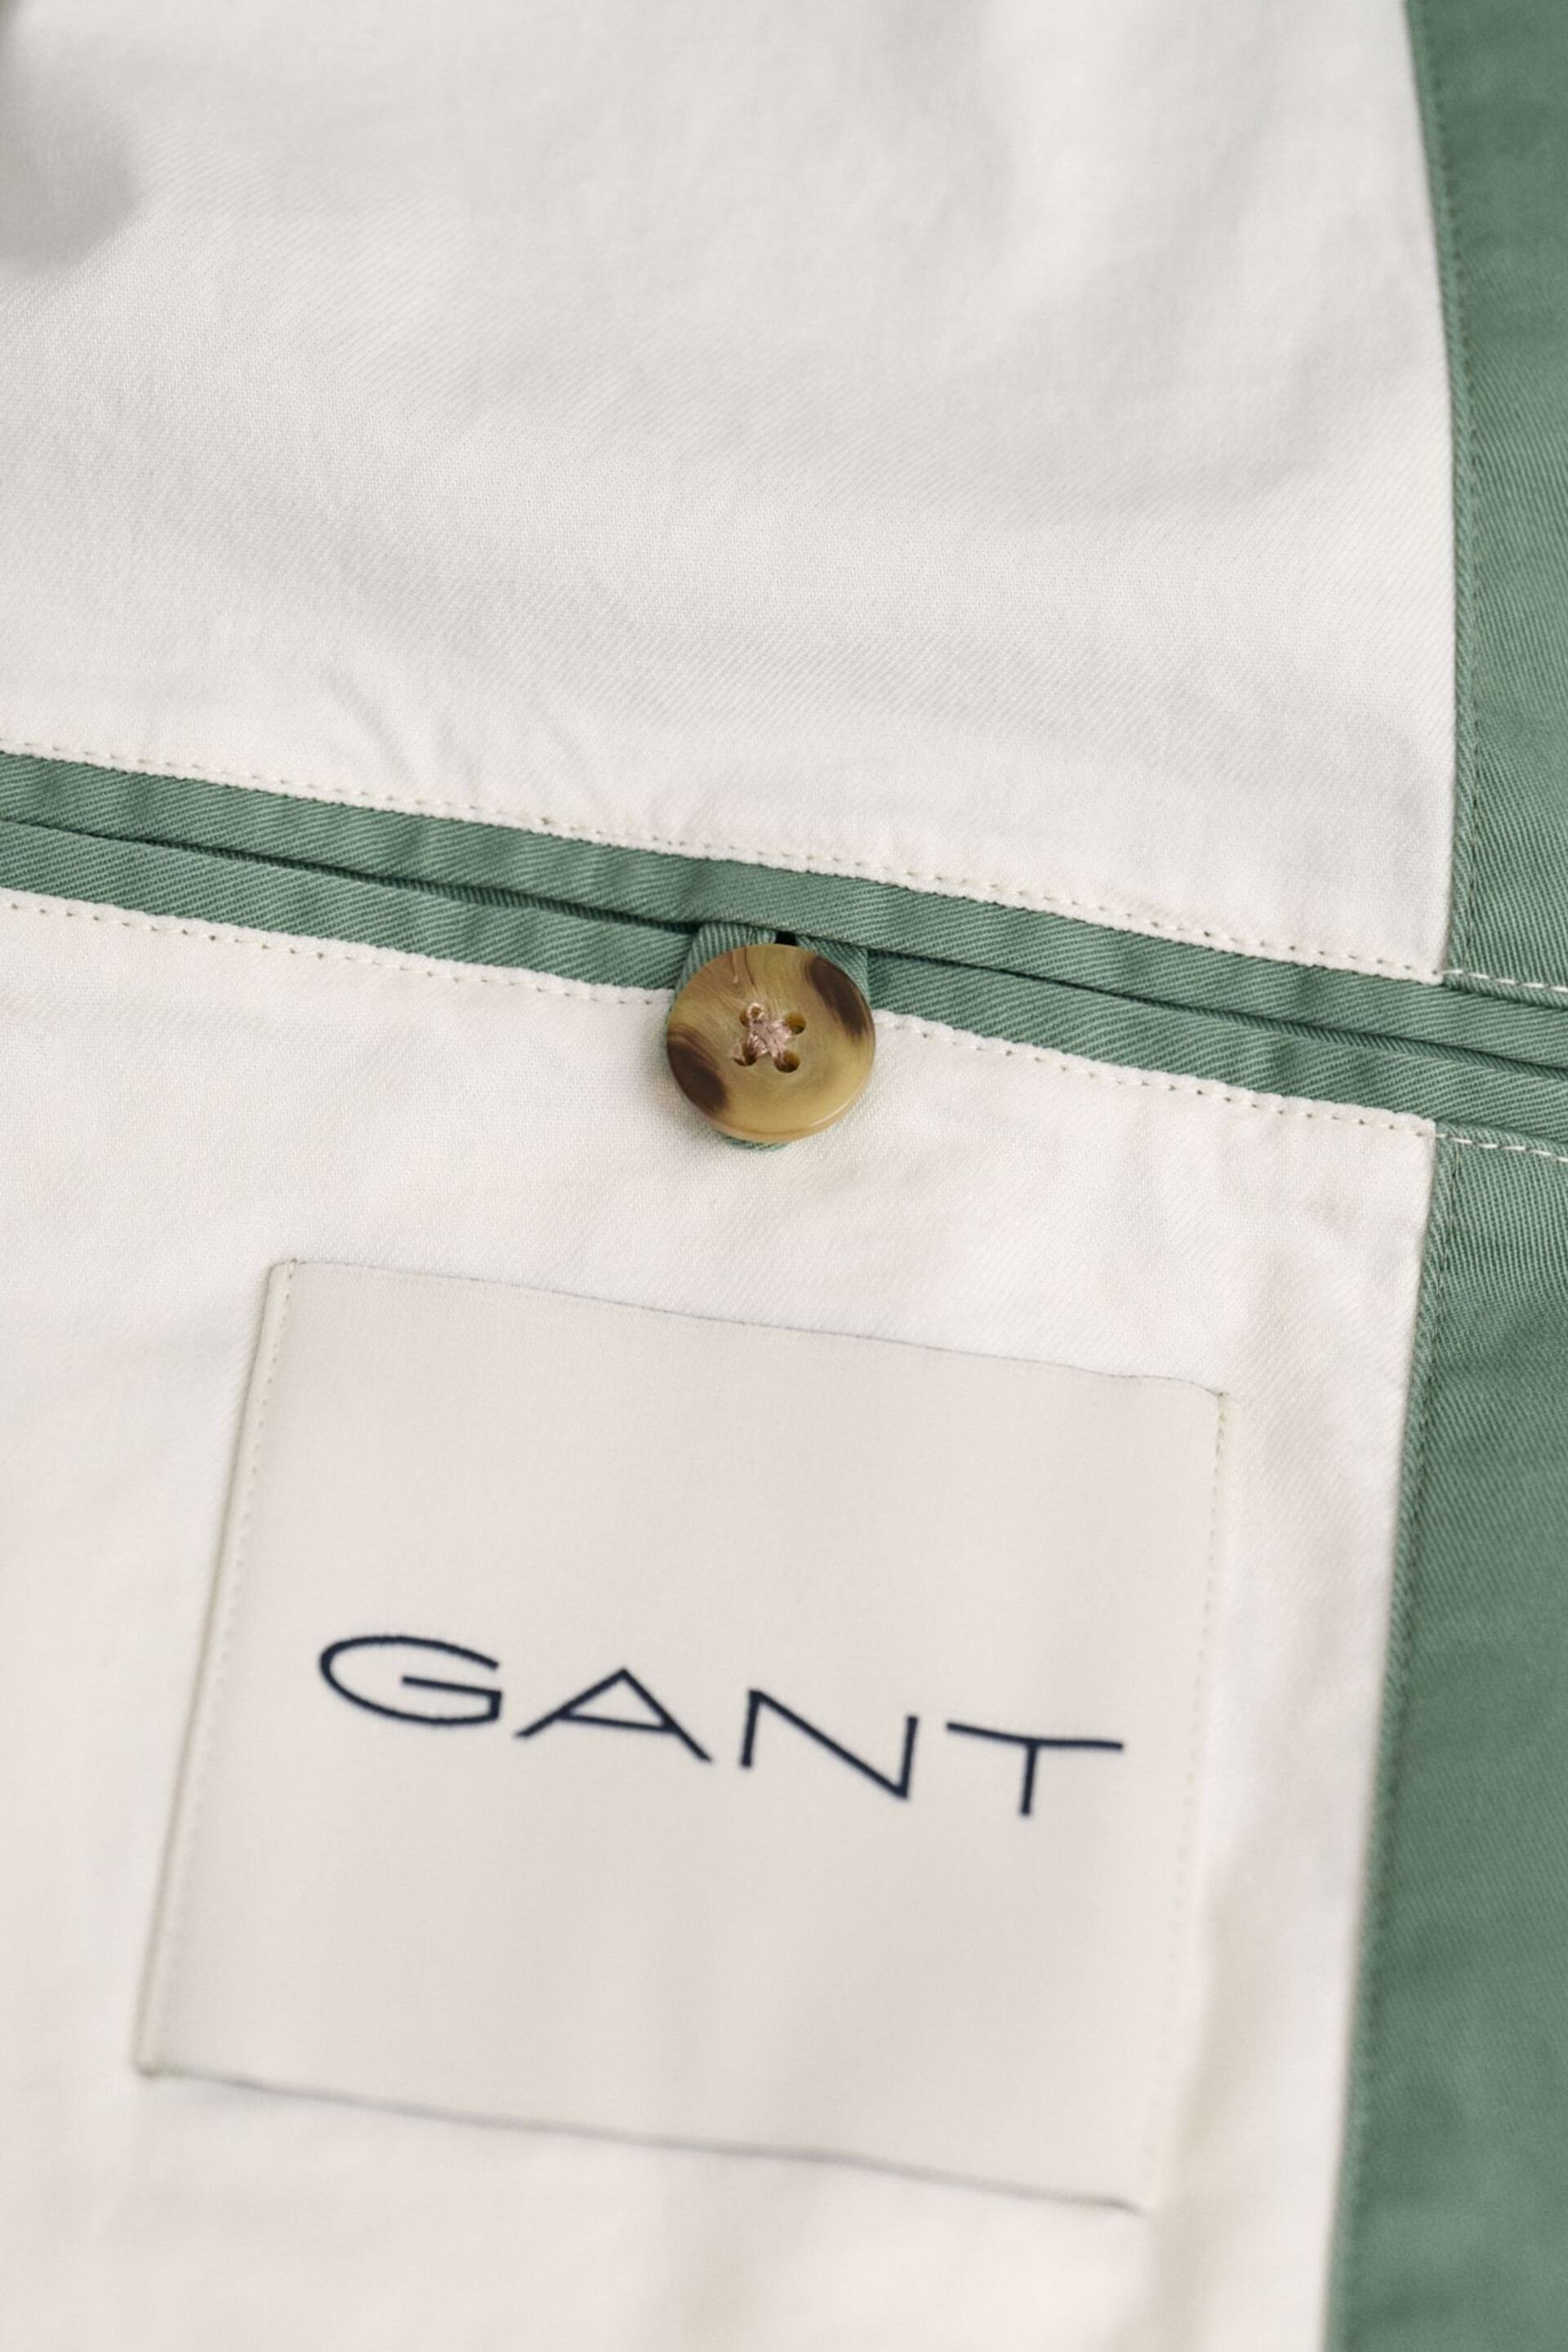 GANT Cotton Jacket - Image 4 of 7